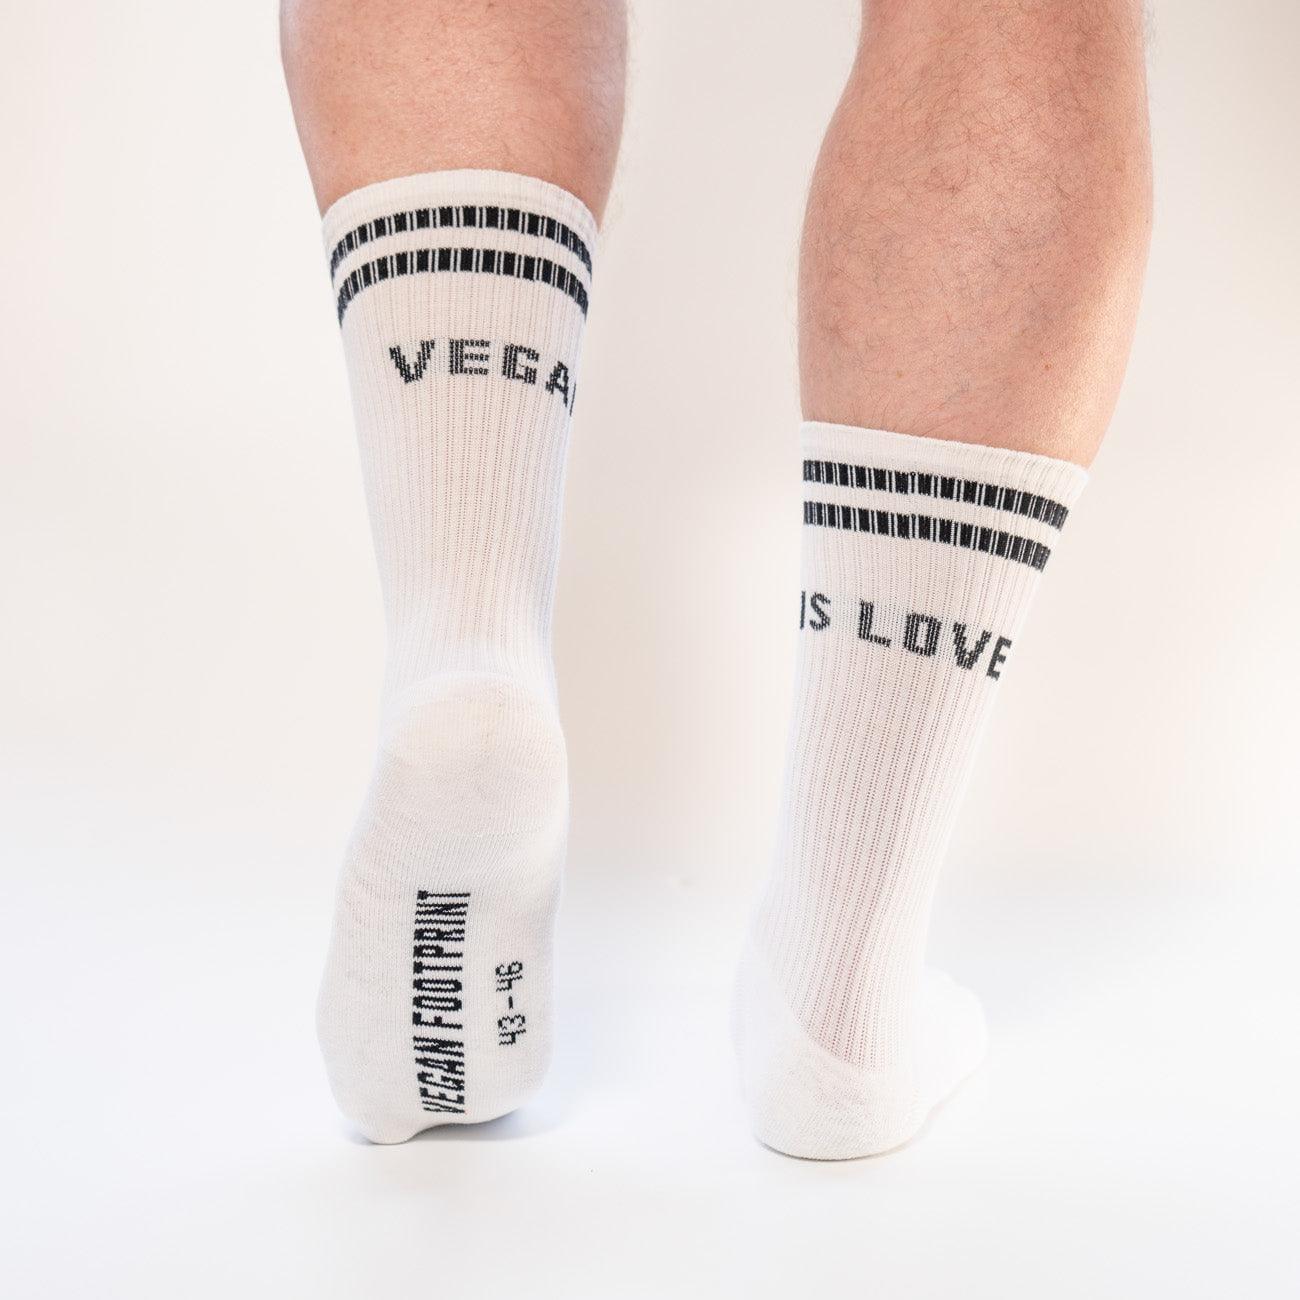 VEGAN IS LOVE - Hohe Sportsocken mit Streifen aus Bio-Baumwolle - 3 Paar - Team Vegan © vegan t shirt